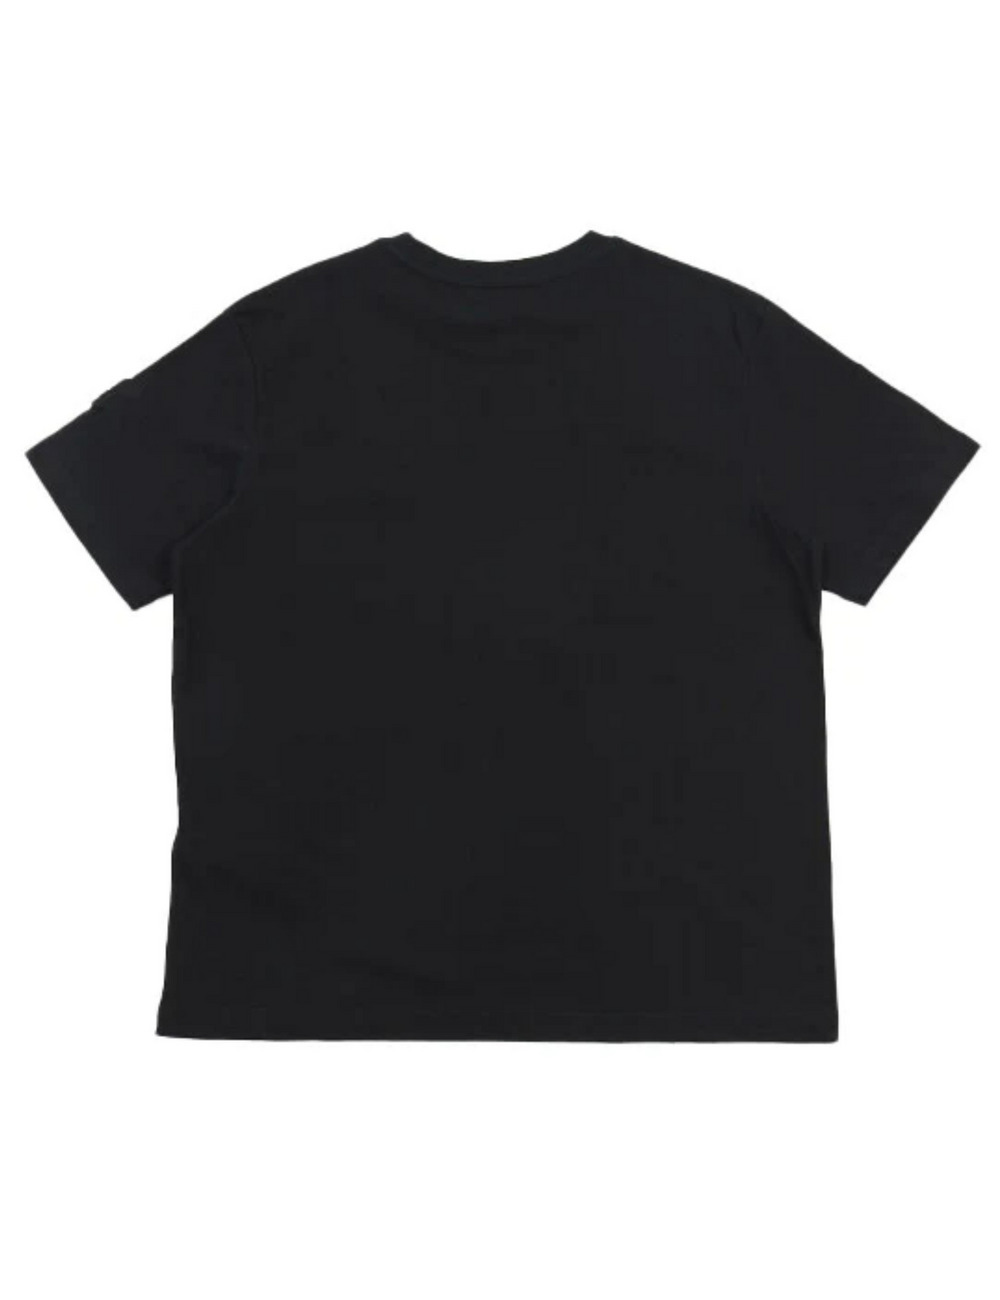 レインボースカルTシャツ(半袖) / RAINBOW SKULL T SHIRT 詳細画像 ブラック 2